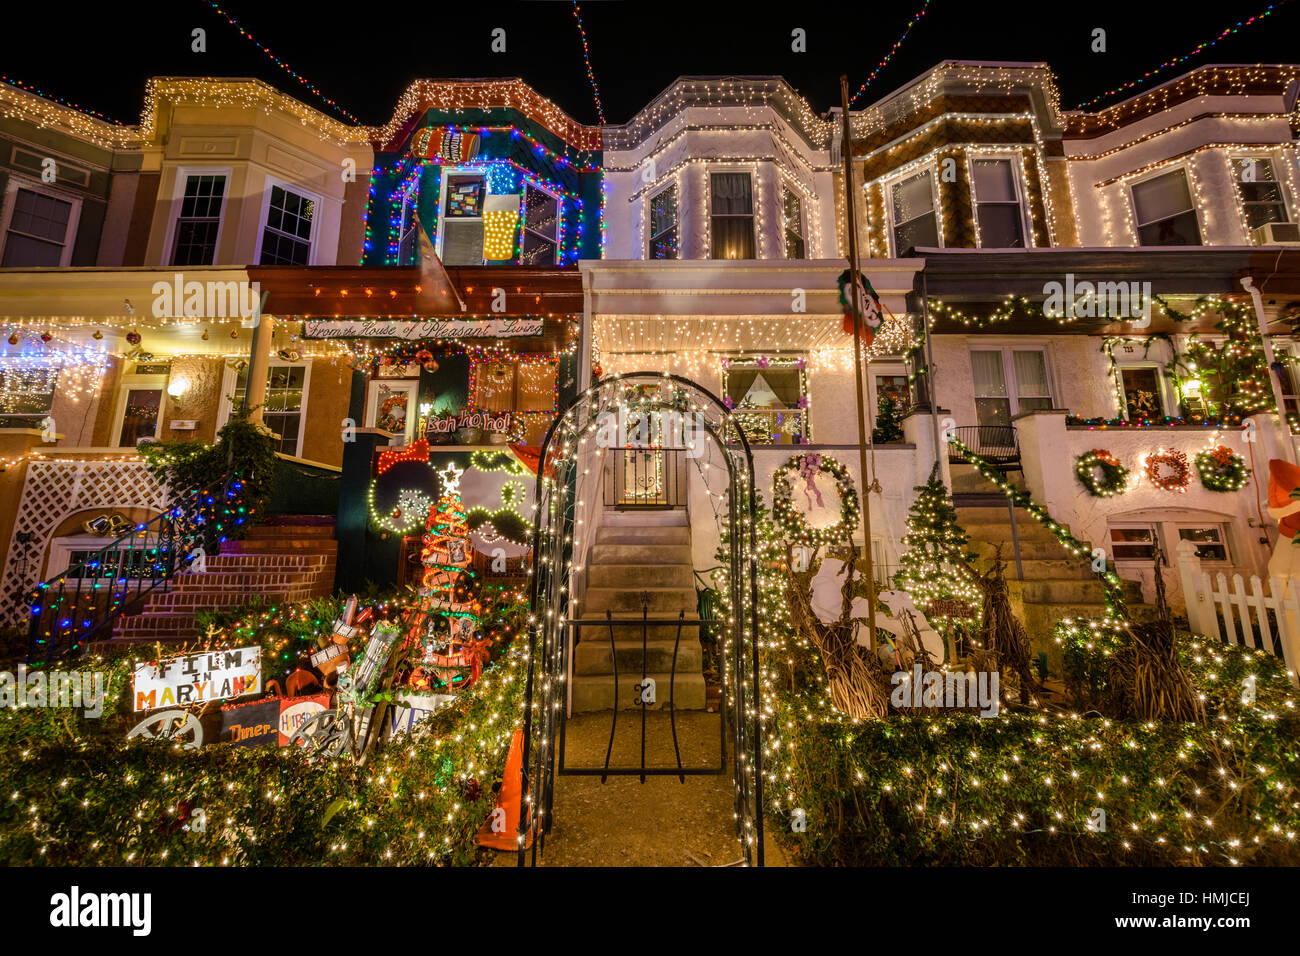 Urlaub / Weihnachtsbeleuchtung am Gebäude in Hampden, Baltimore Maryland in der Nacht Stockfoto